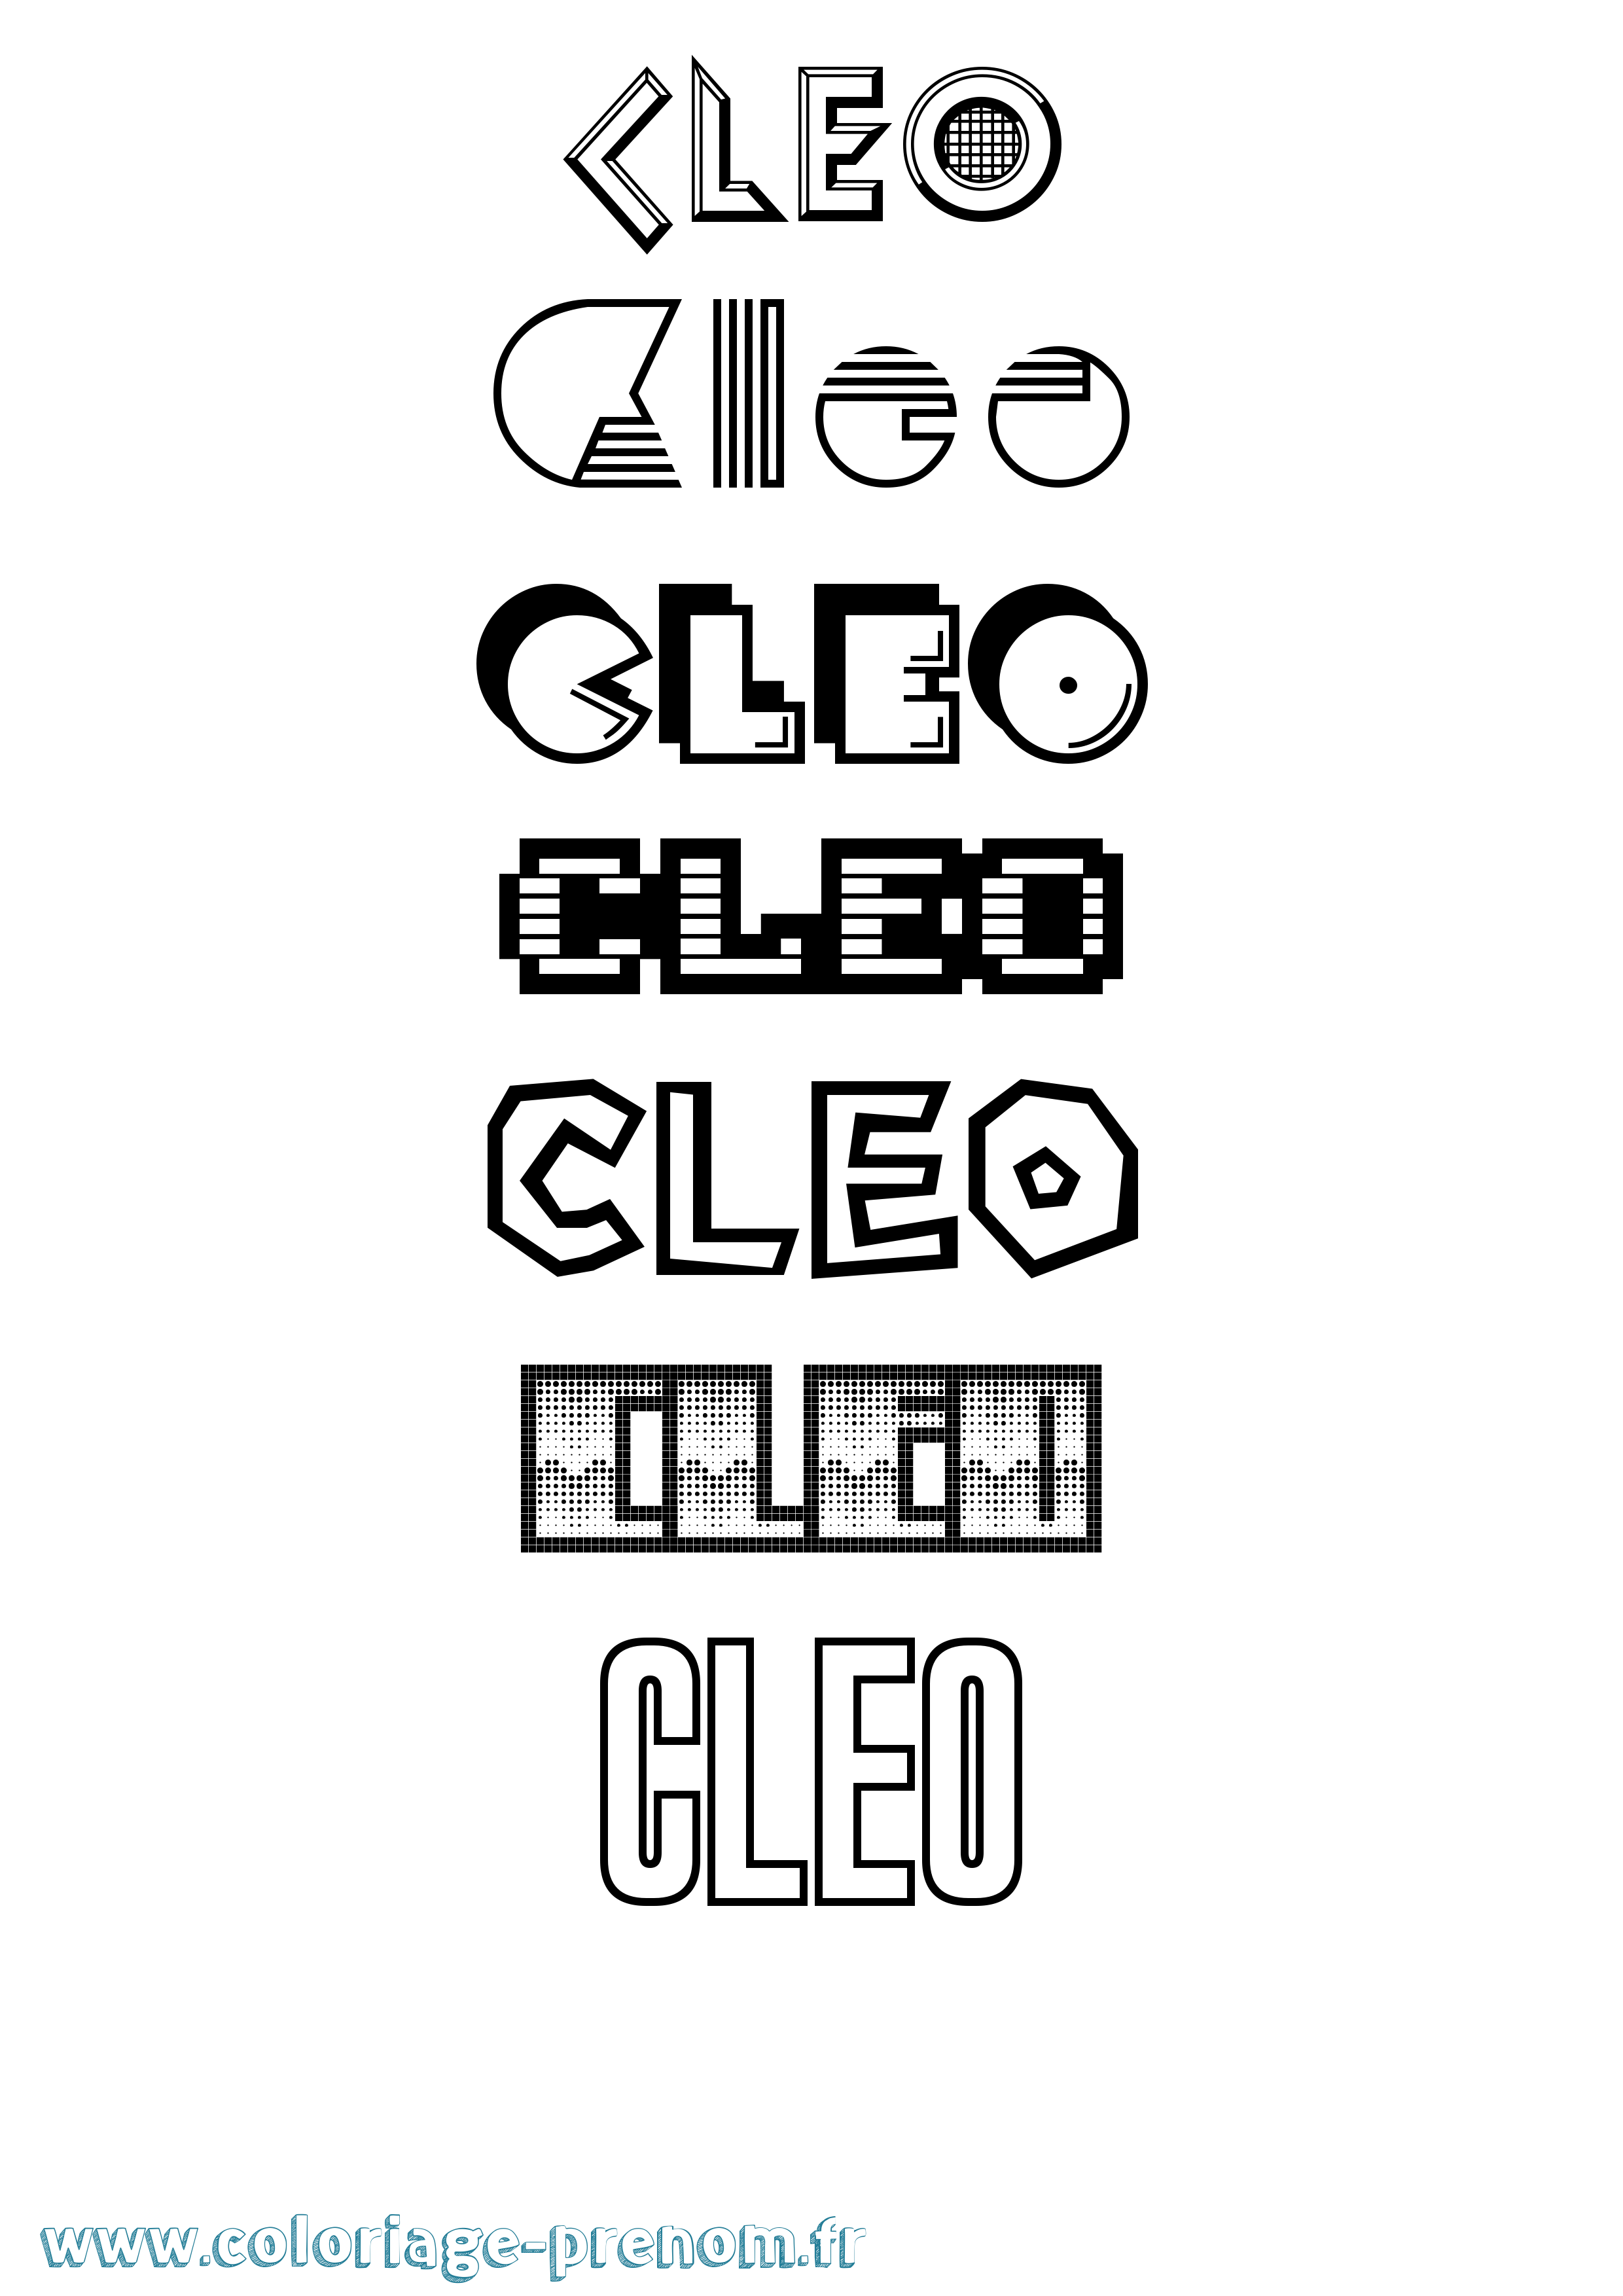 Coloriage prénom Cleo Jeux Vidéos